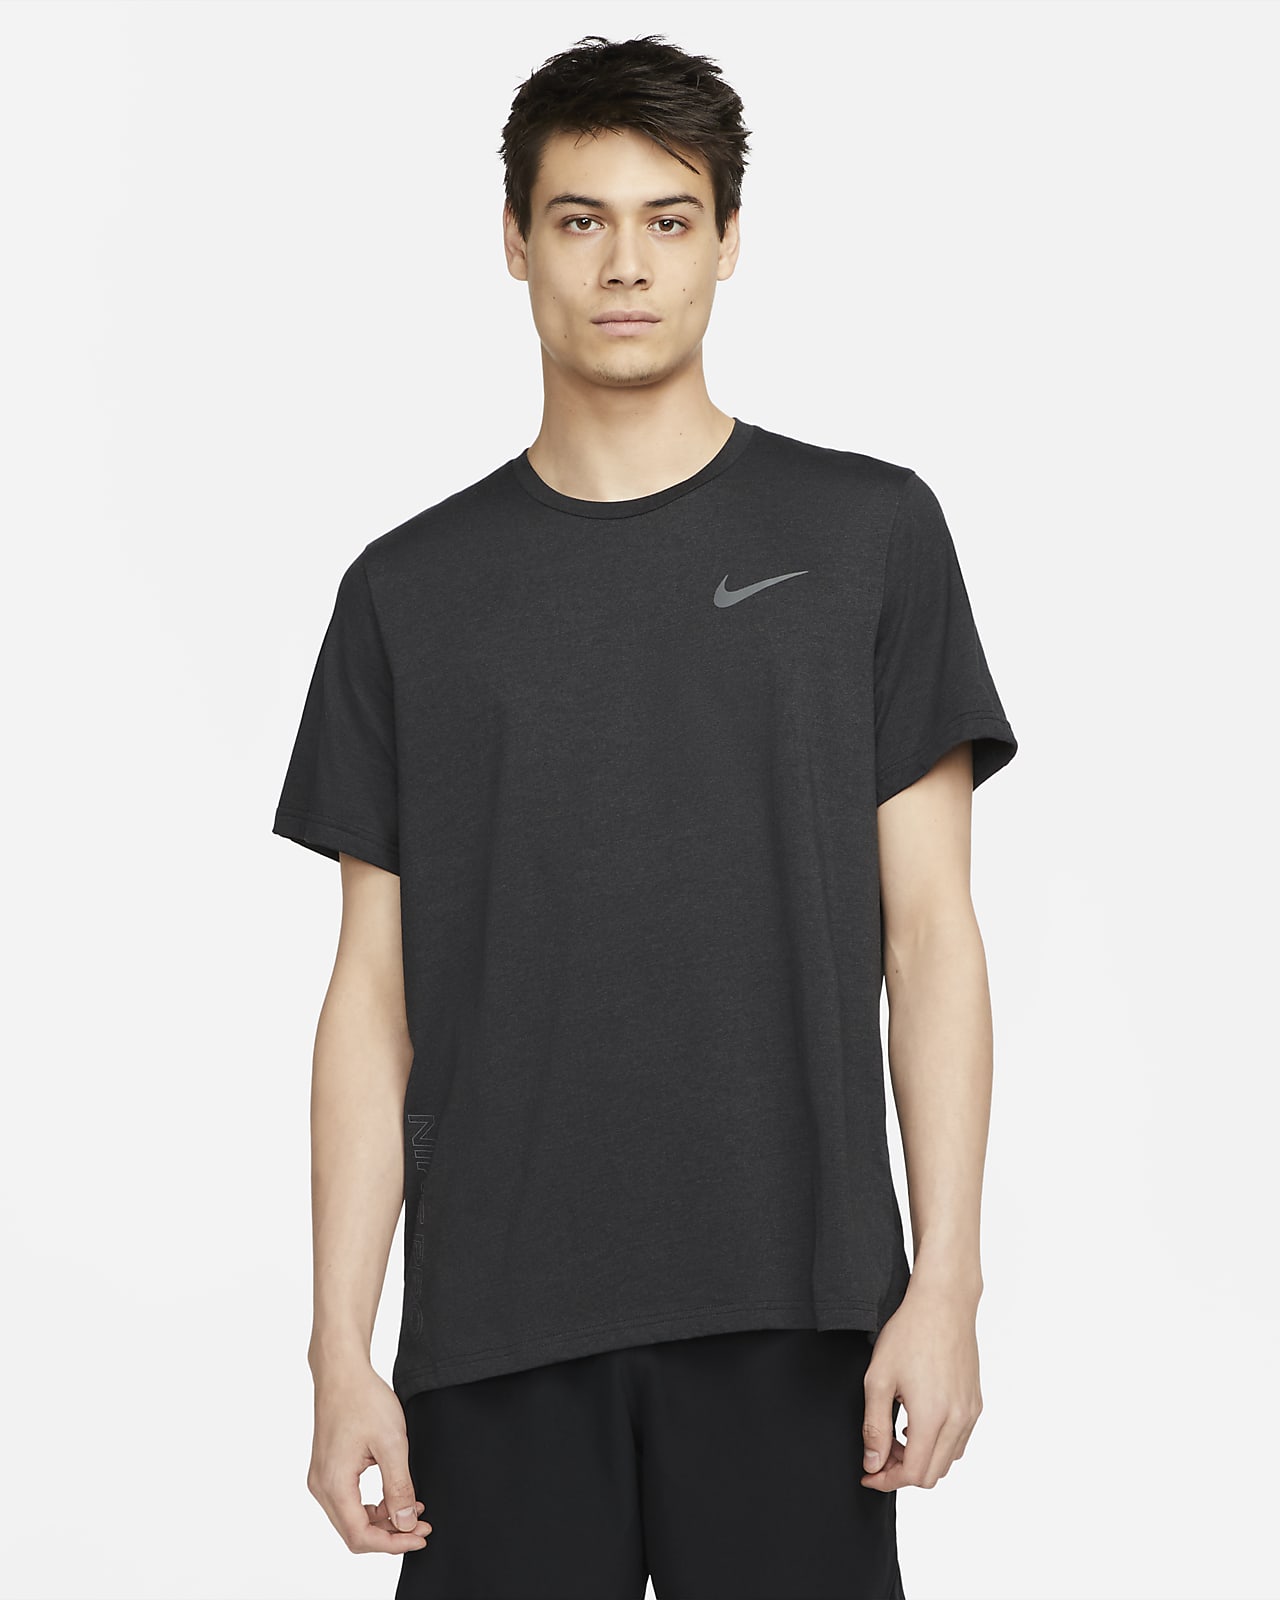 Nike Pro Dri Fit Short Sleeve T-Shirt